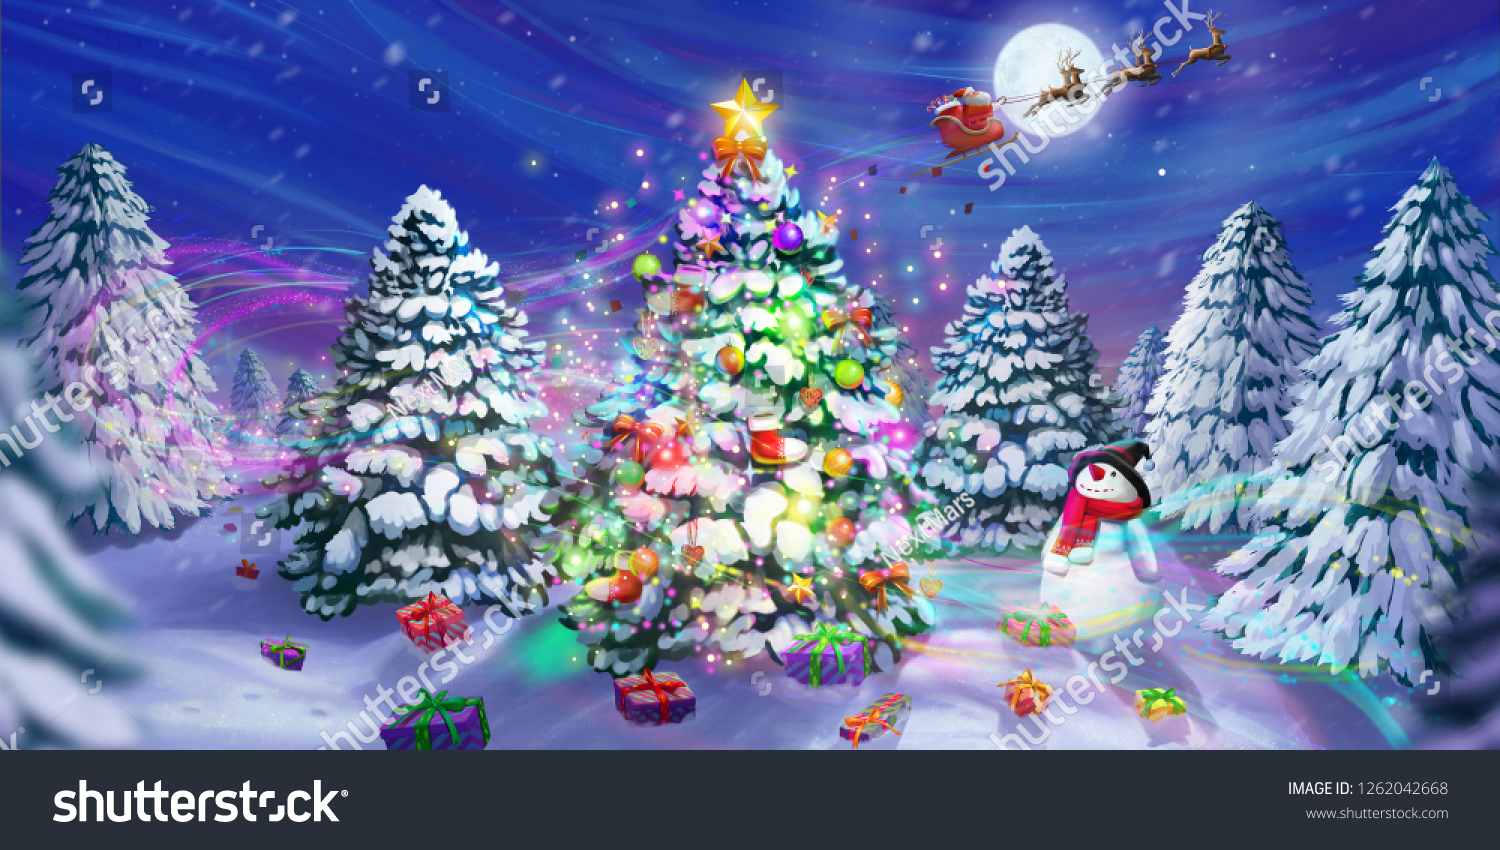 聖降誕祭お目出とう 新年お目出とう クリスマスツリーの伝説 グリーティングカード 小説の背景 コンセプトアート リアルイラスト ビデオゲームデジタルcgアートワーク 自然の風景 のイラスト素材